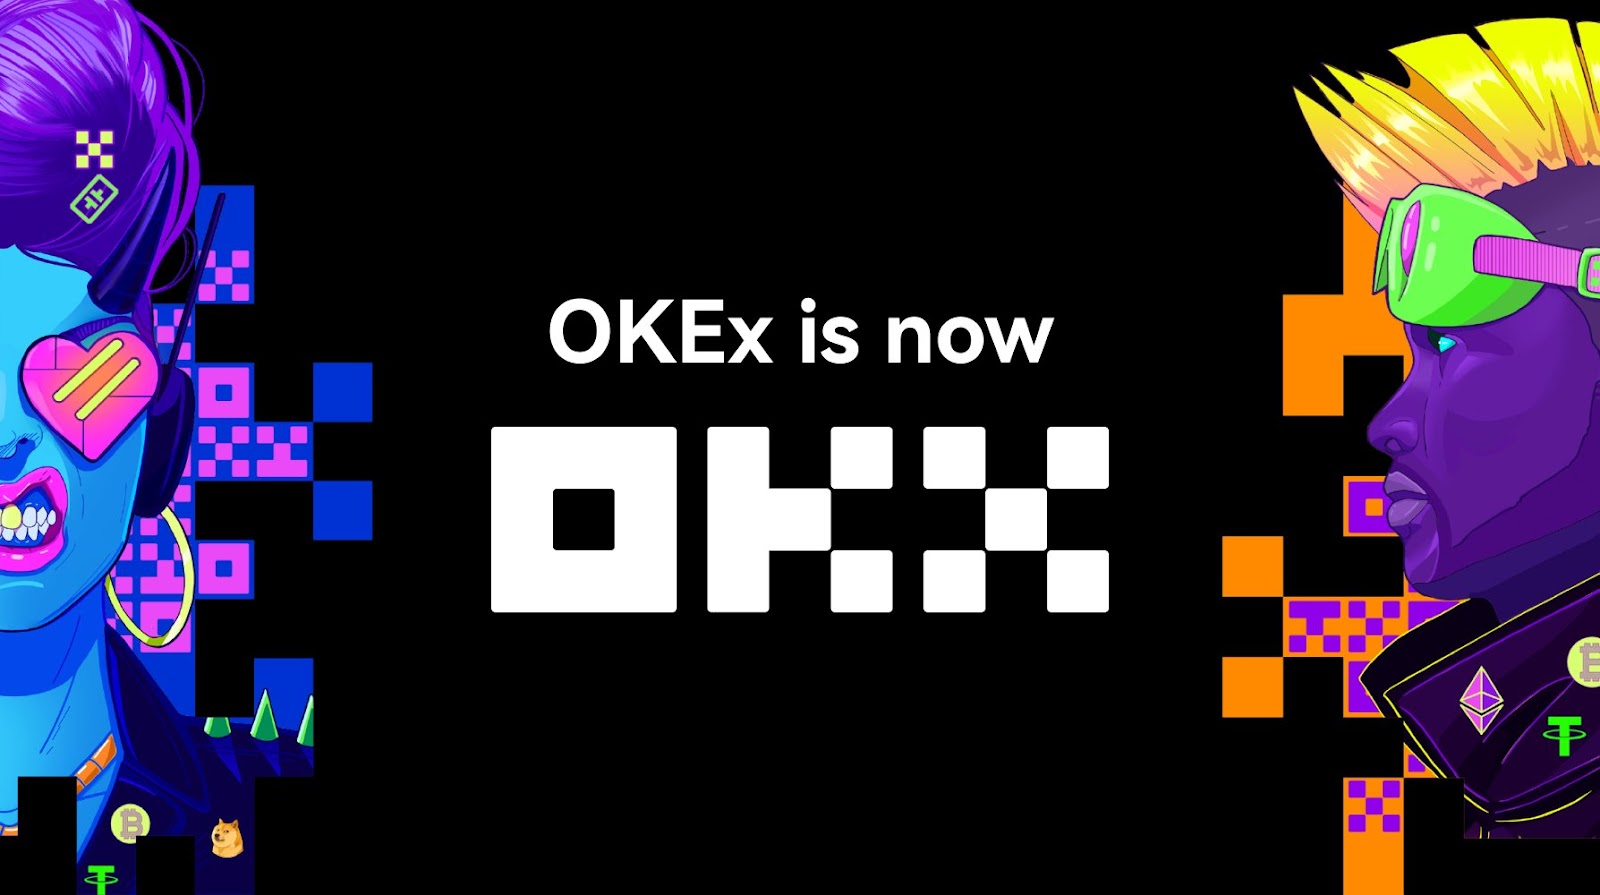 منصة OKX تعيد تنظيم علامتها التجارية وتصبح ثاني اكبر منصة تداول